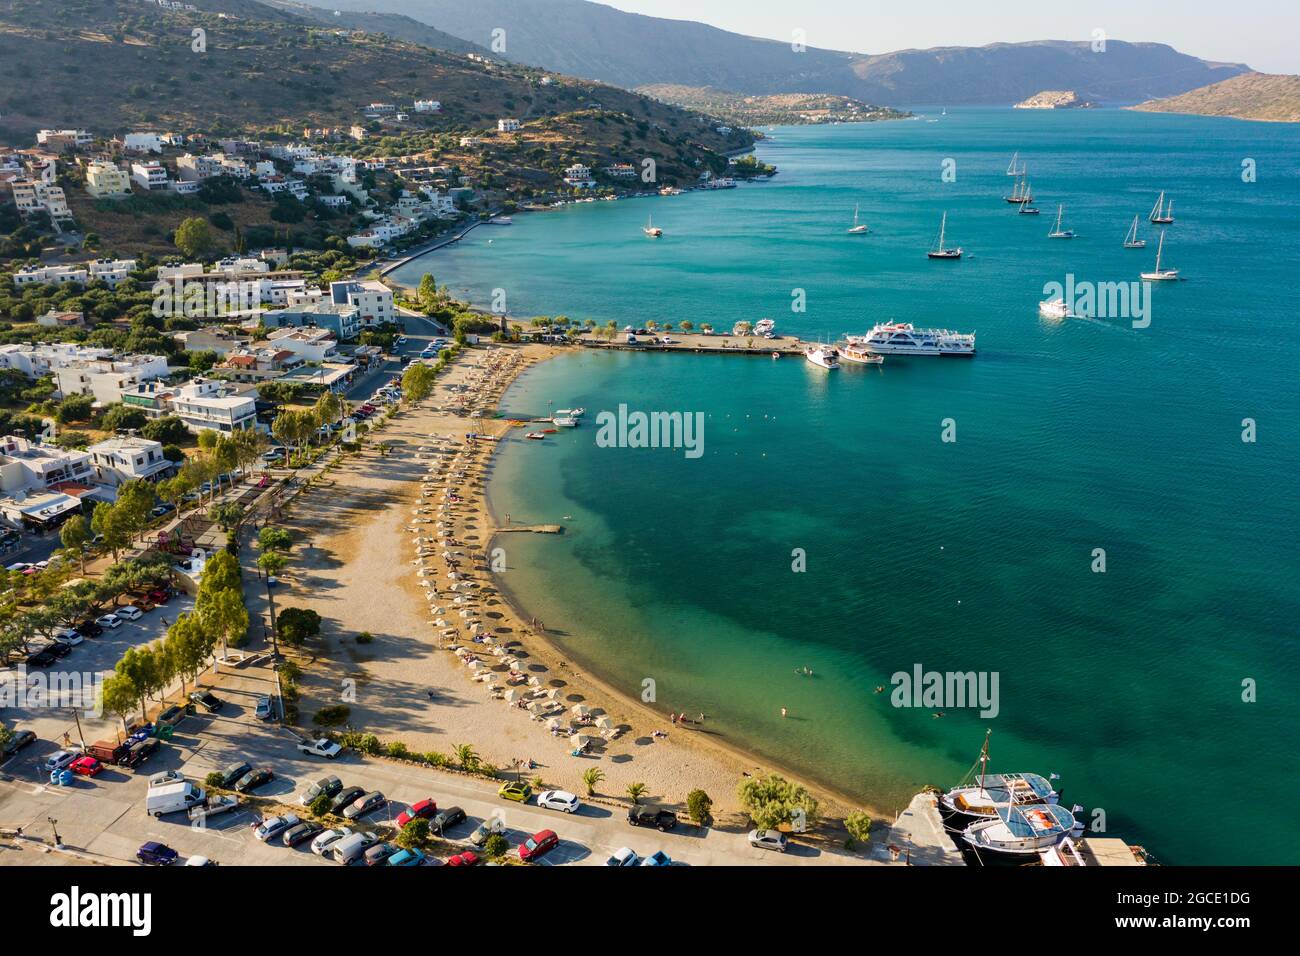 Vista aerea della spiaggia pubblica nella località turistica di Elounda sull'isola di Creta (Grecia) Foto Stock